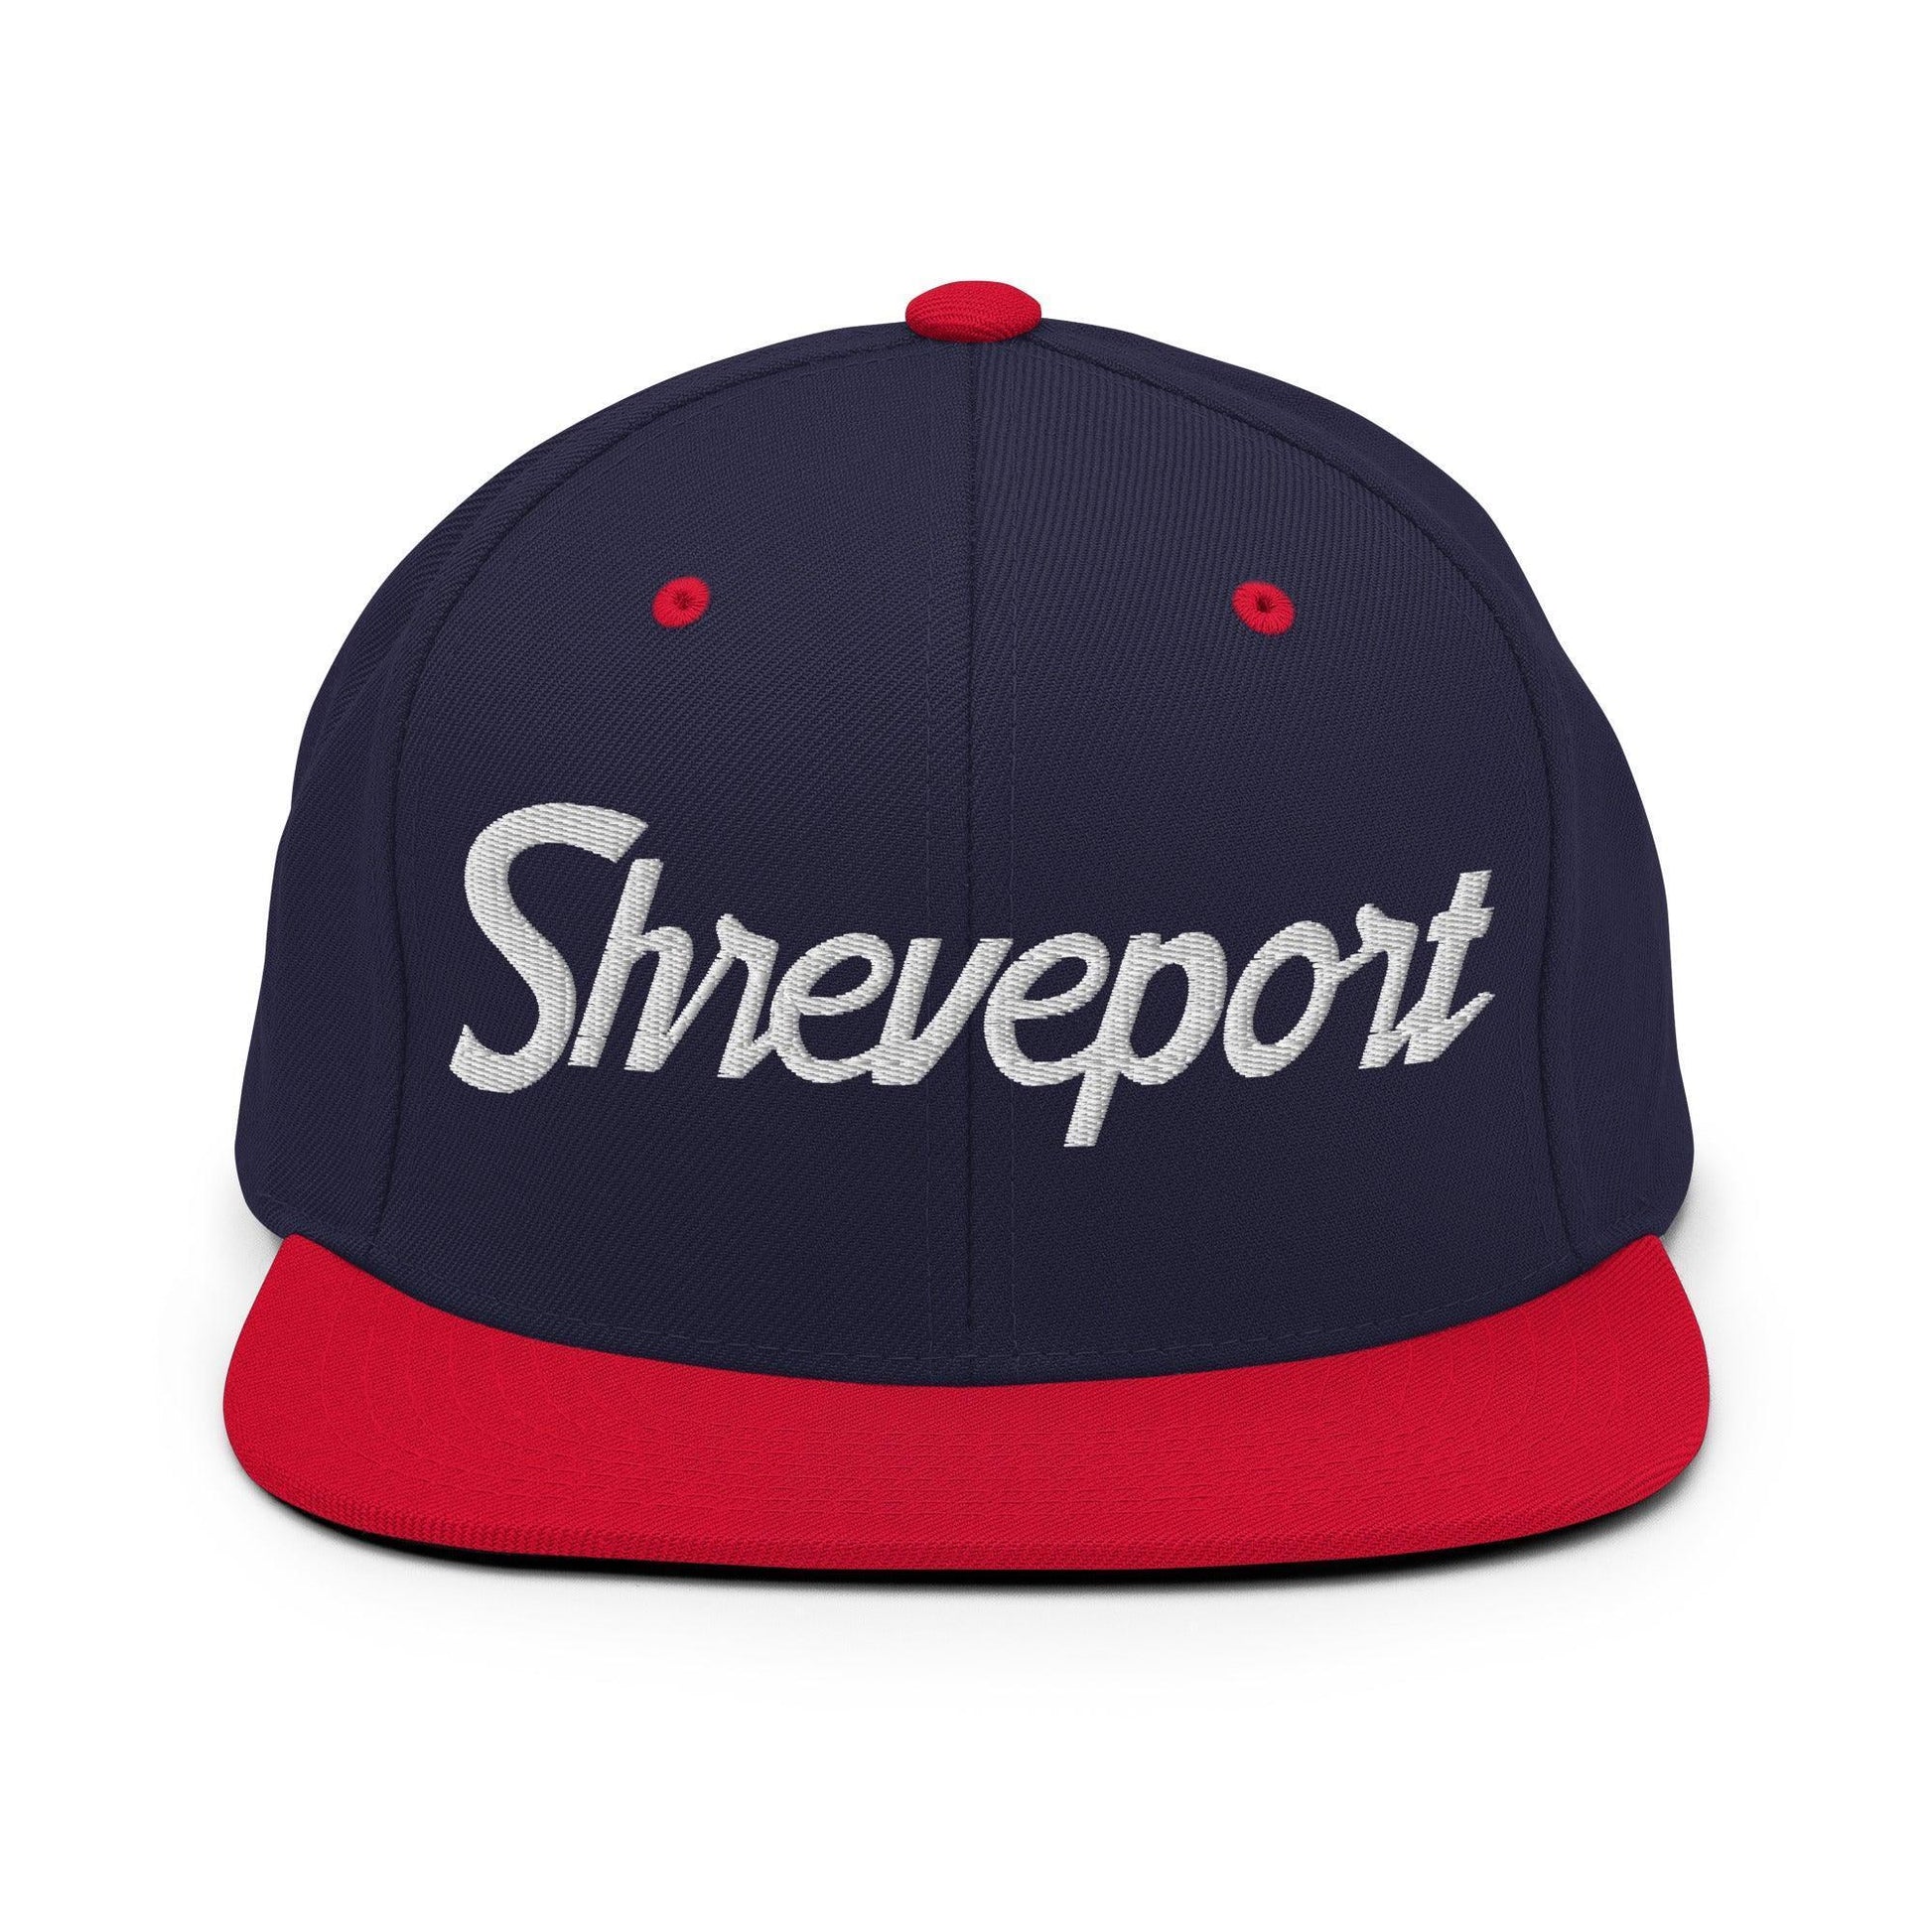 Shreveport Script Snapback Hat Navy/ Red